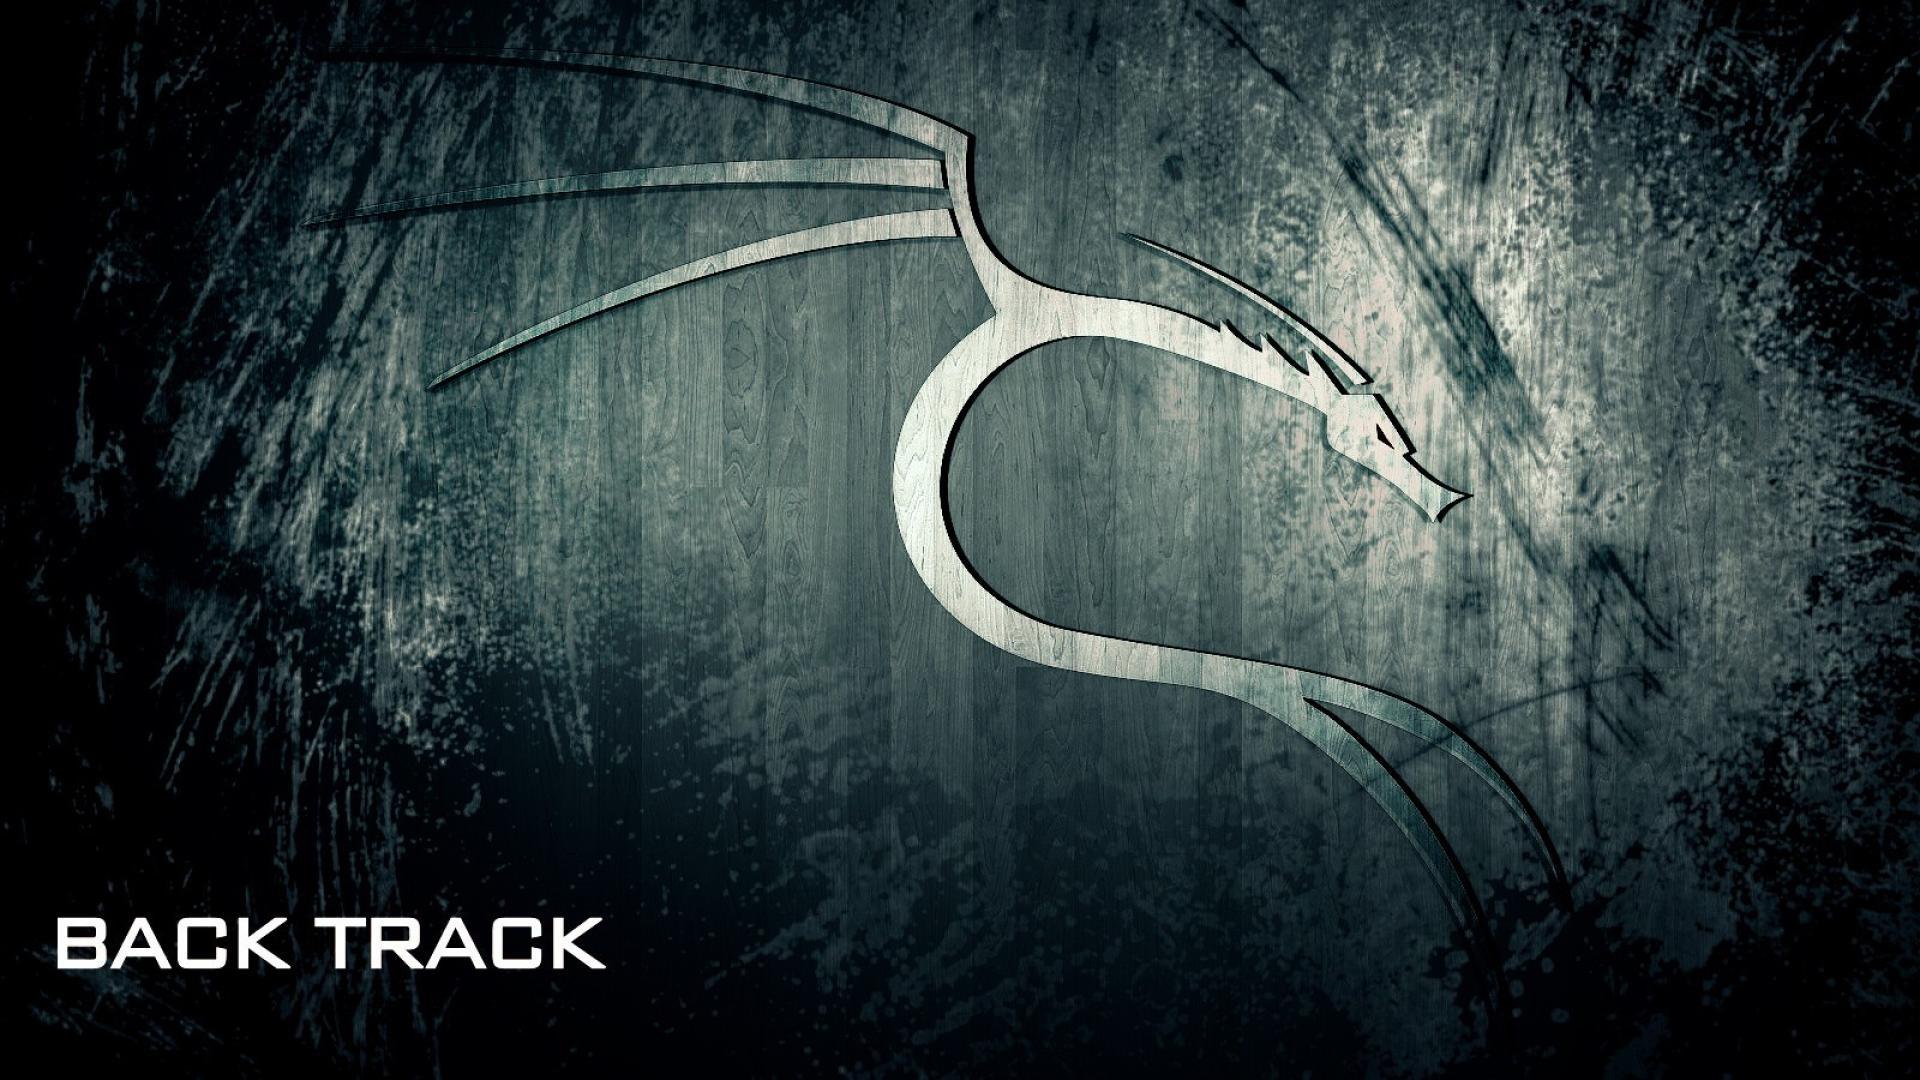 download backtrack 5 r1 for kali linux